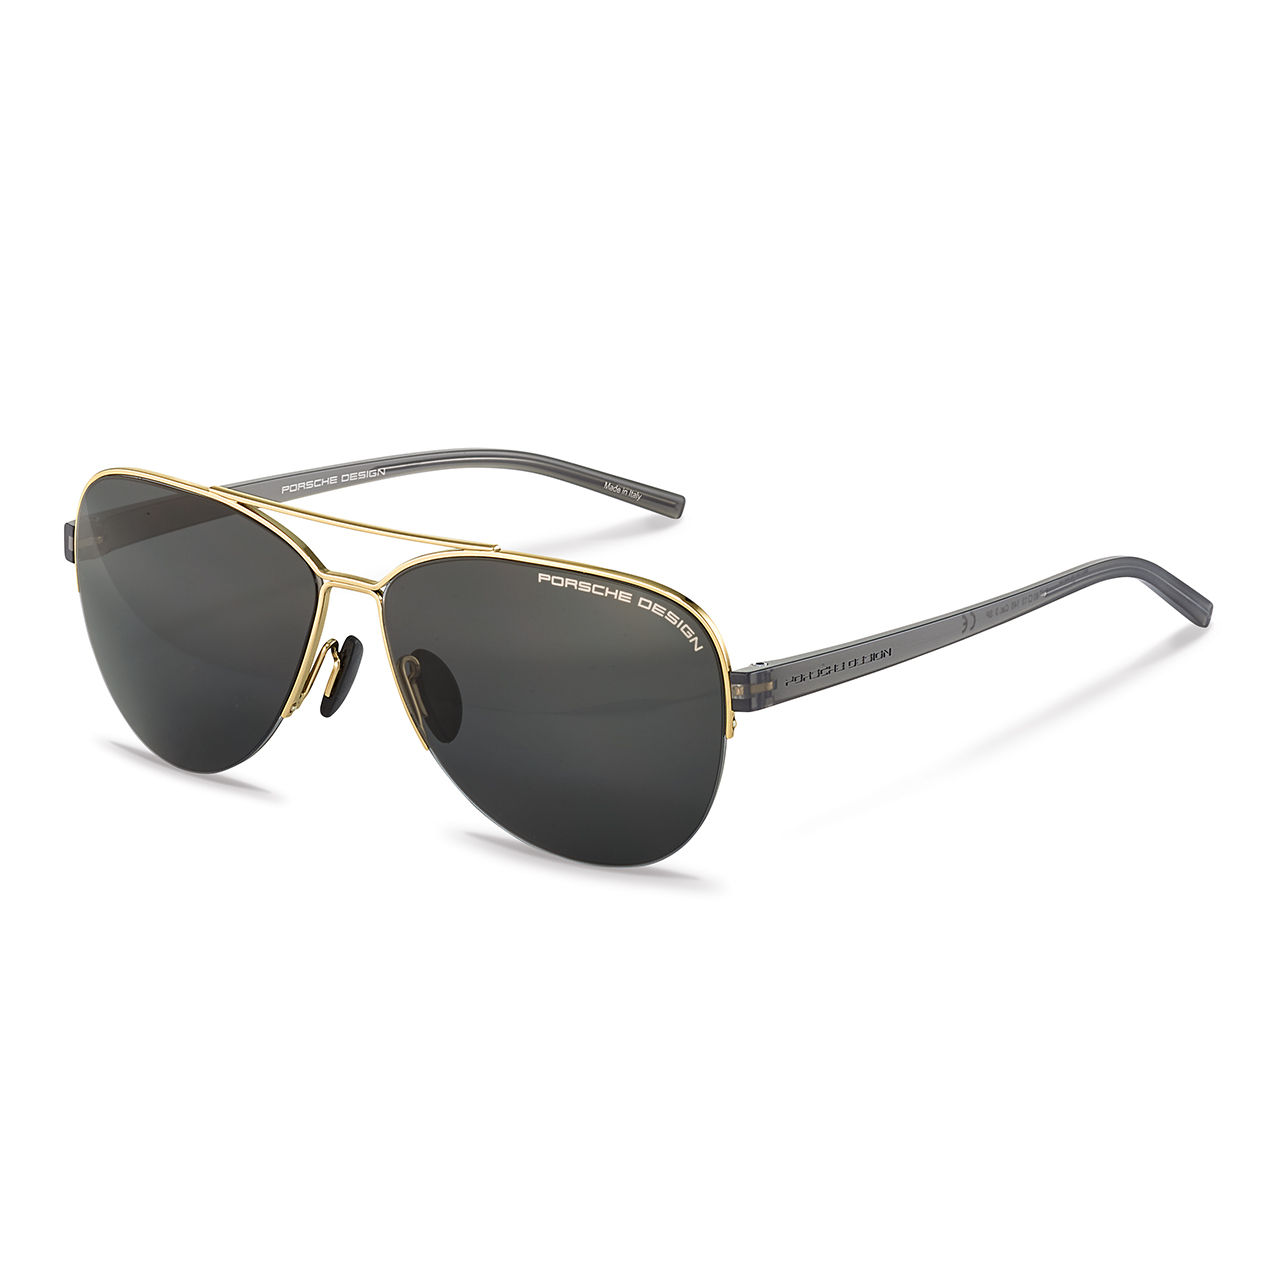 Fashion Sonnenbrille Lieblingsmensch®  UNISEX Brille Pilotenbrille 